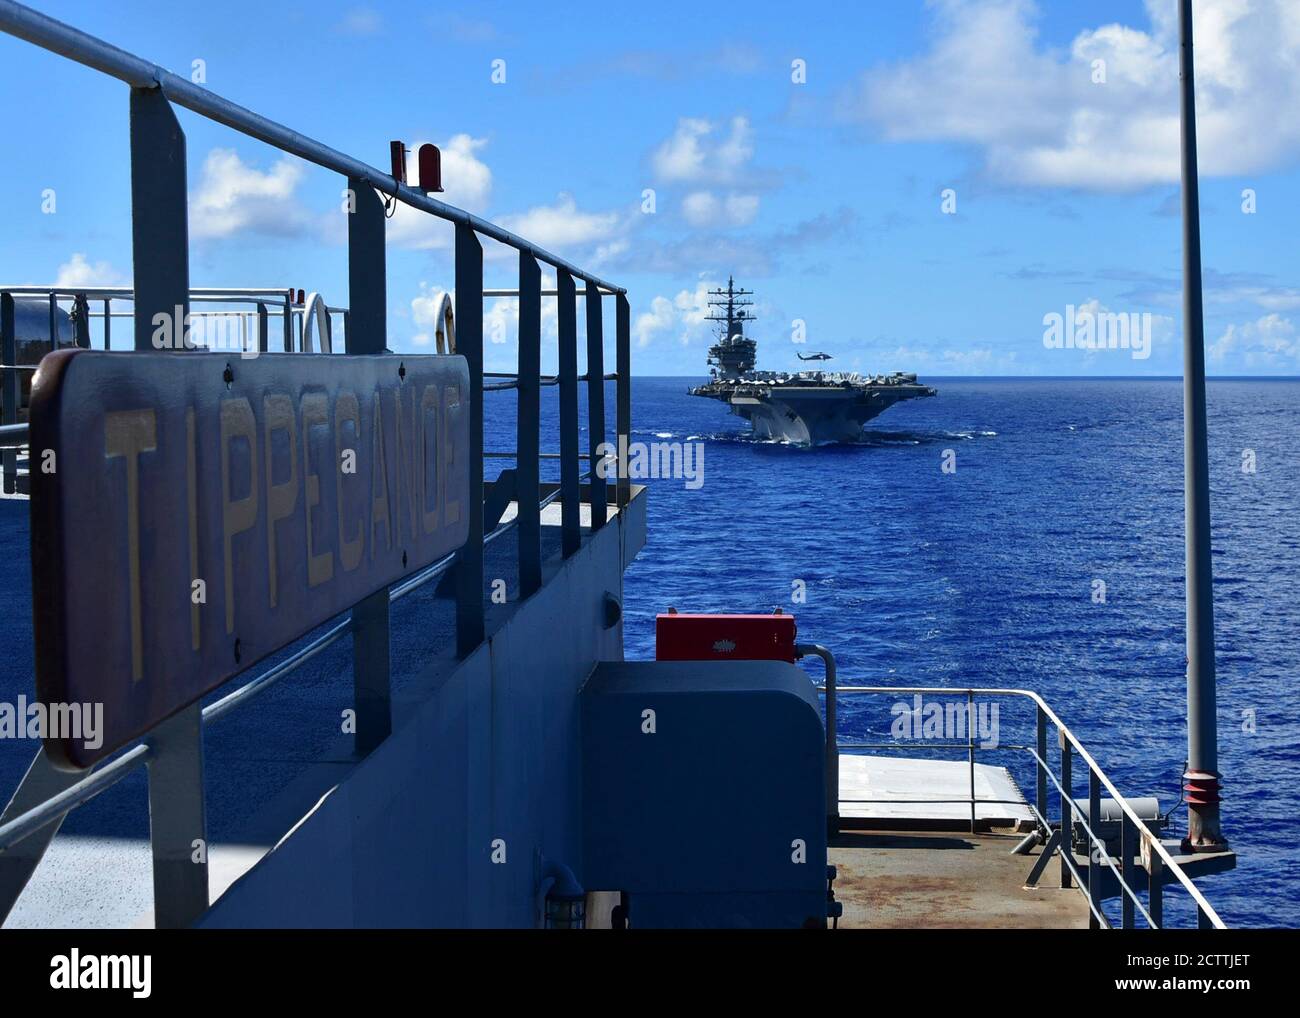 PHILIPPINISCHES MEER (Sept 13, 2020) – der im Vorlauf eingesetzte Flugzeugträger USS Ronald Reagan (CVN 76) nähert sich dem Flottennachfüller USNS Tippecanoe (T-AO 199) in Vorbereitung auf eine laufende Nachfüllung. (USA Navy Foto von Christopher Bosch) Stockfoto